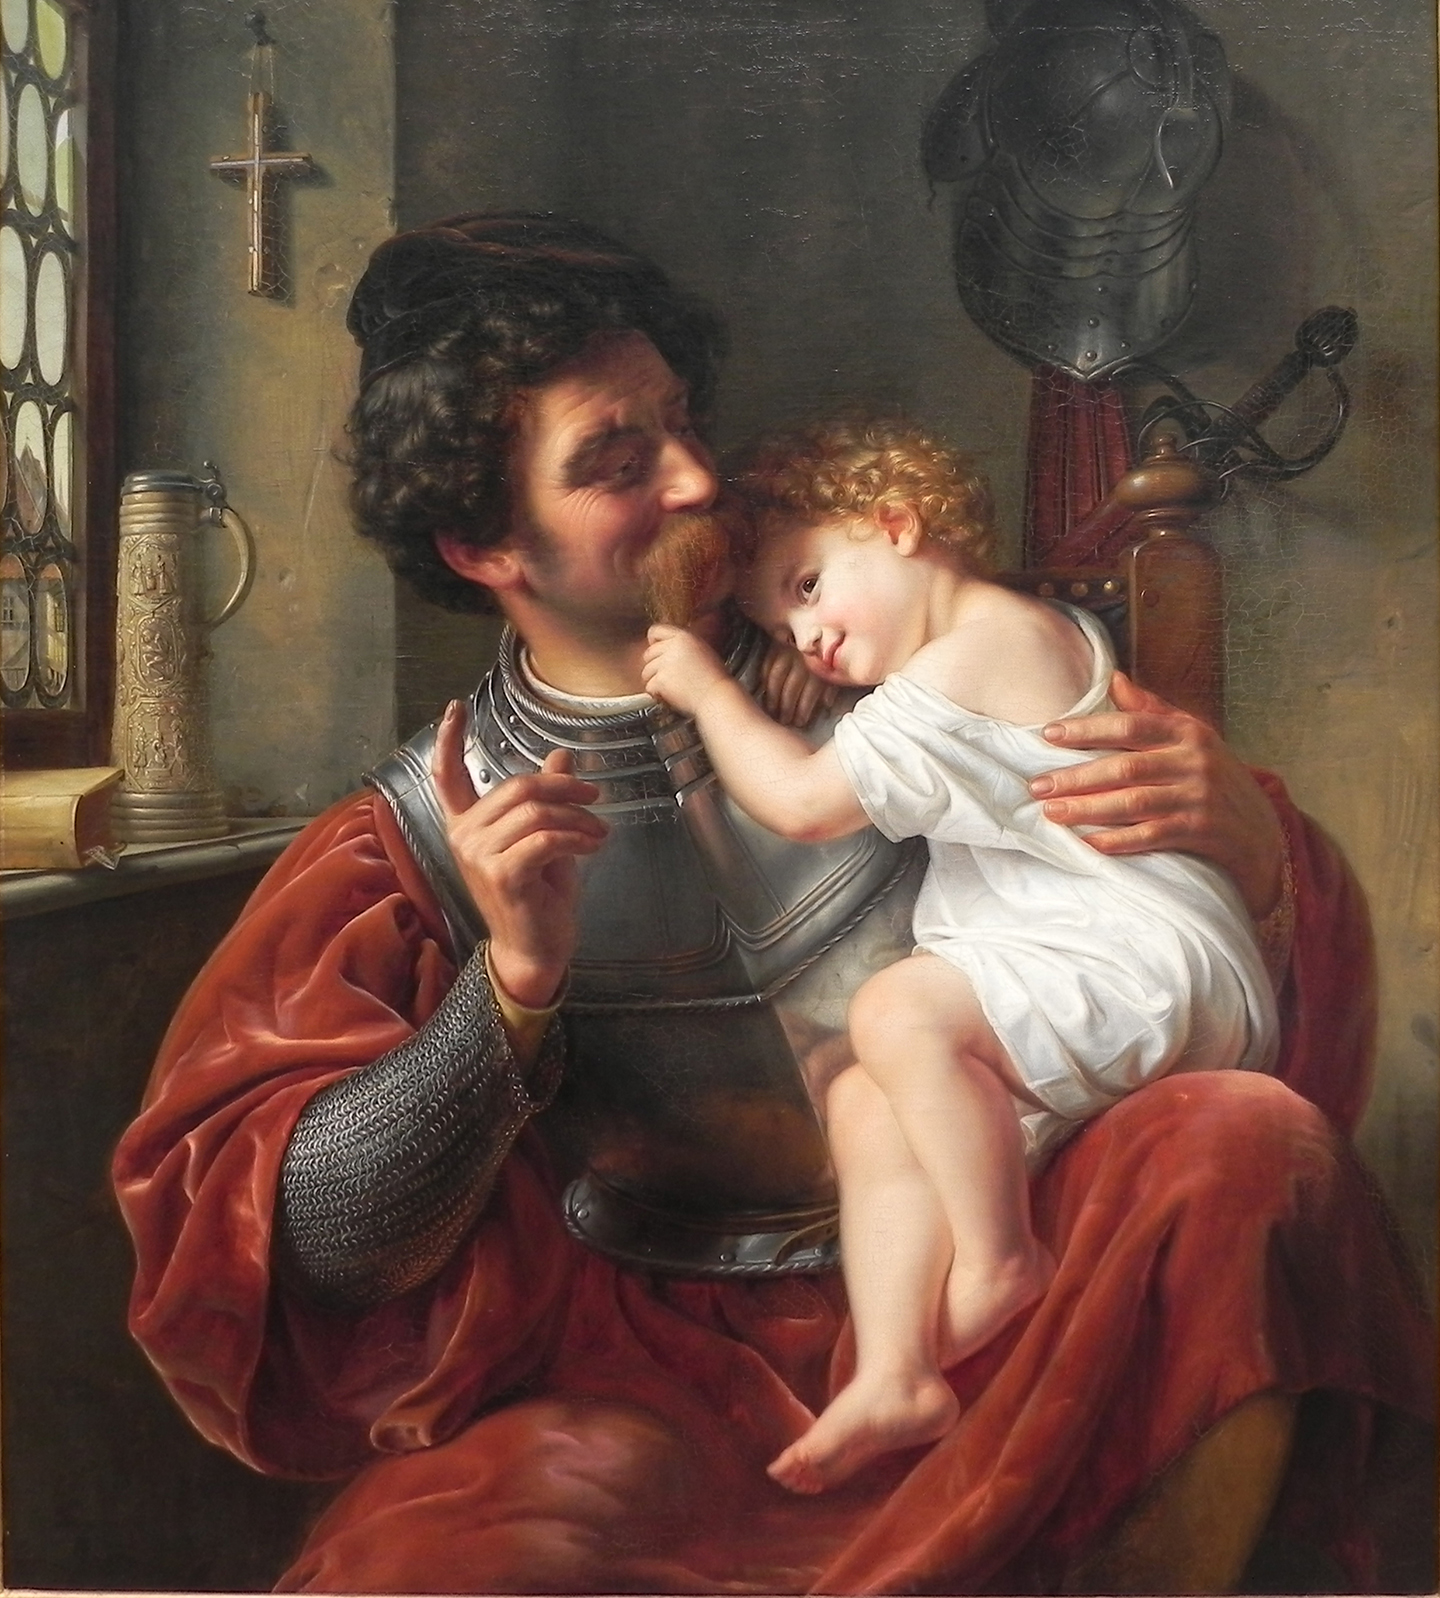 Tác phẩm “The Warrior and His Child” (Người chiến binh và Con trai) của họa sĩ Theodor Hildebrandt vẽ năm 1832. Tranh sơn dầu trên vải canvas trưng bày Old National Gallery, Berlin. (Ảnh: Tài liệu công cộng)